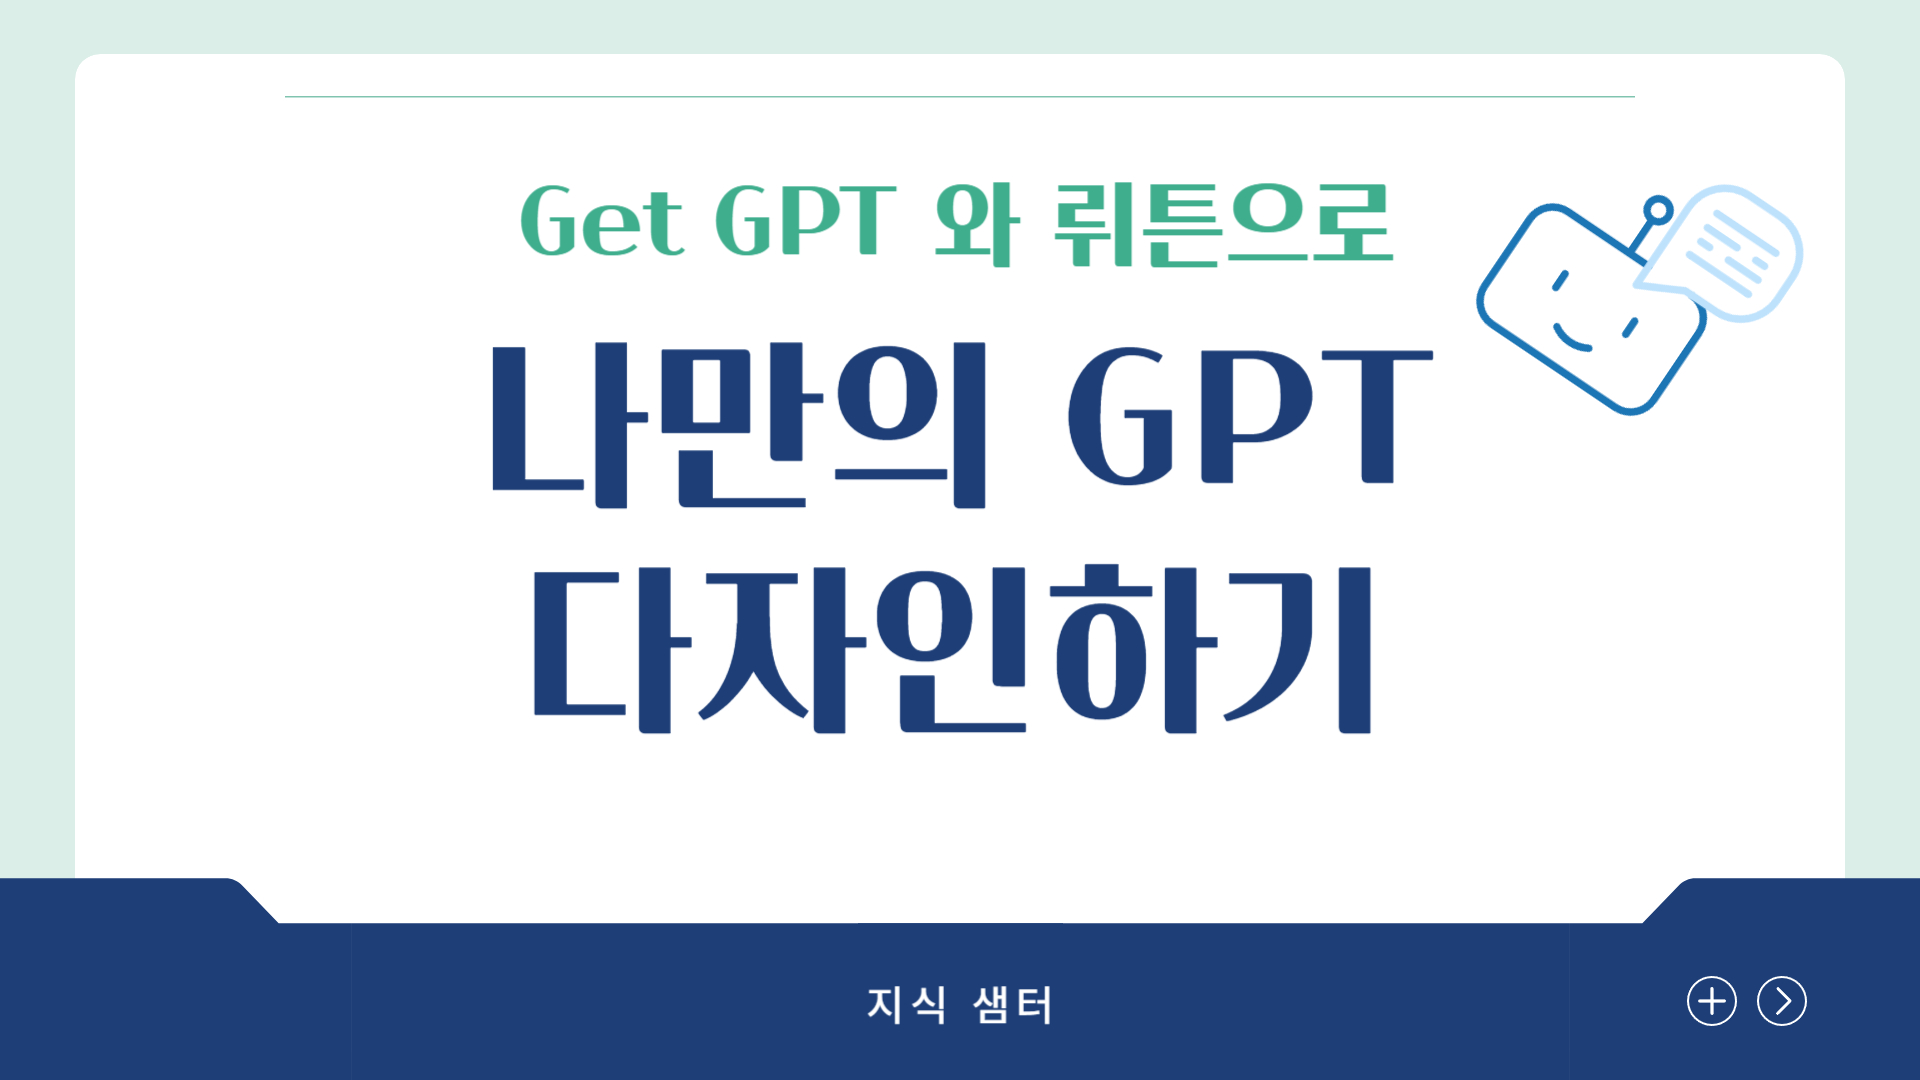 Get GPT, 뤼튼으로 나만의 GPT 만들기(5기)